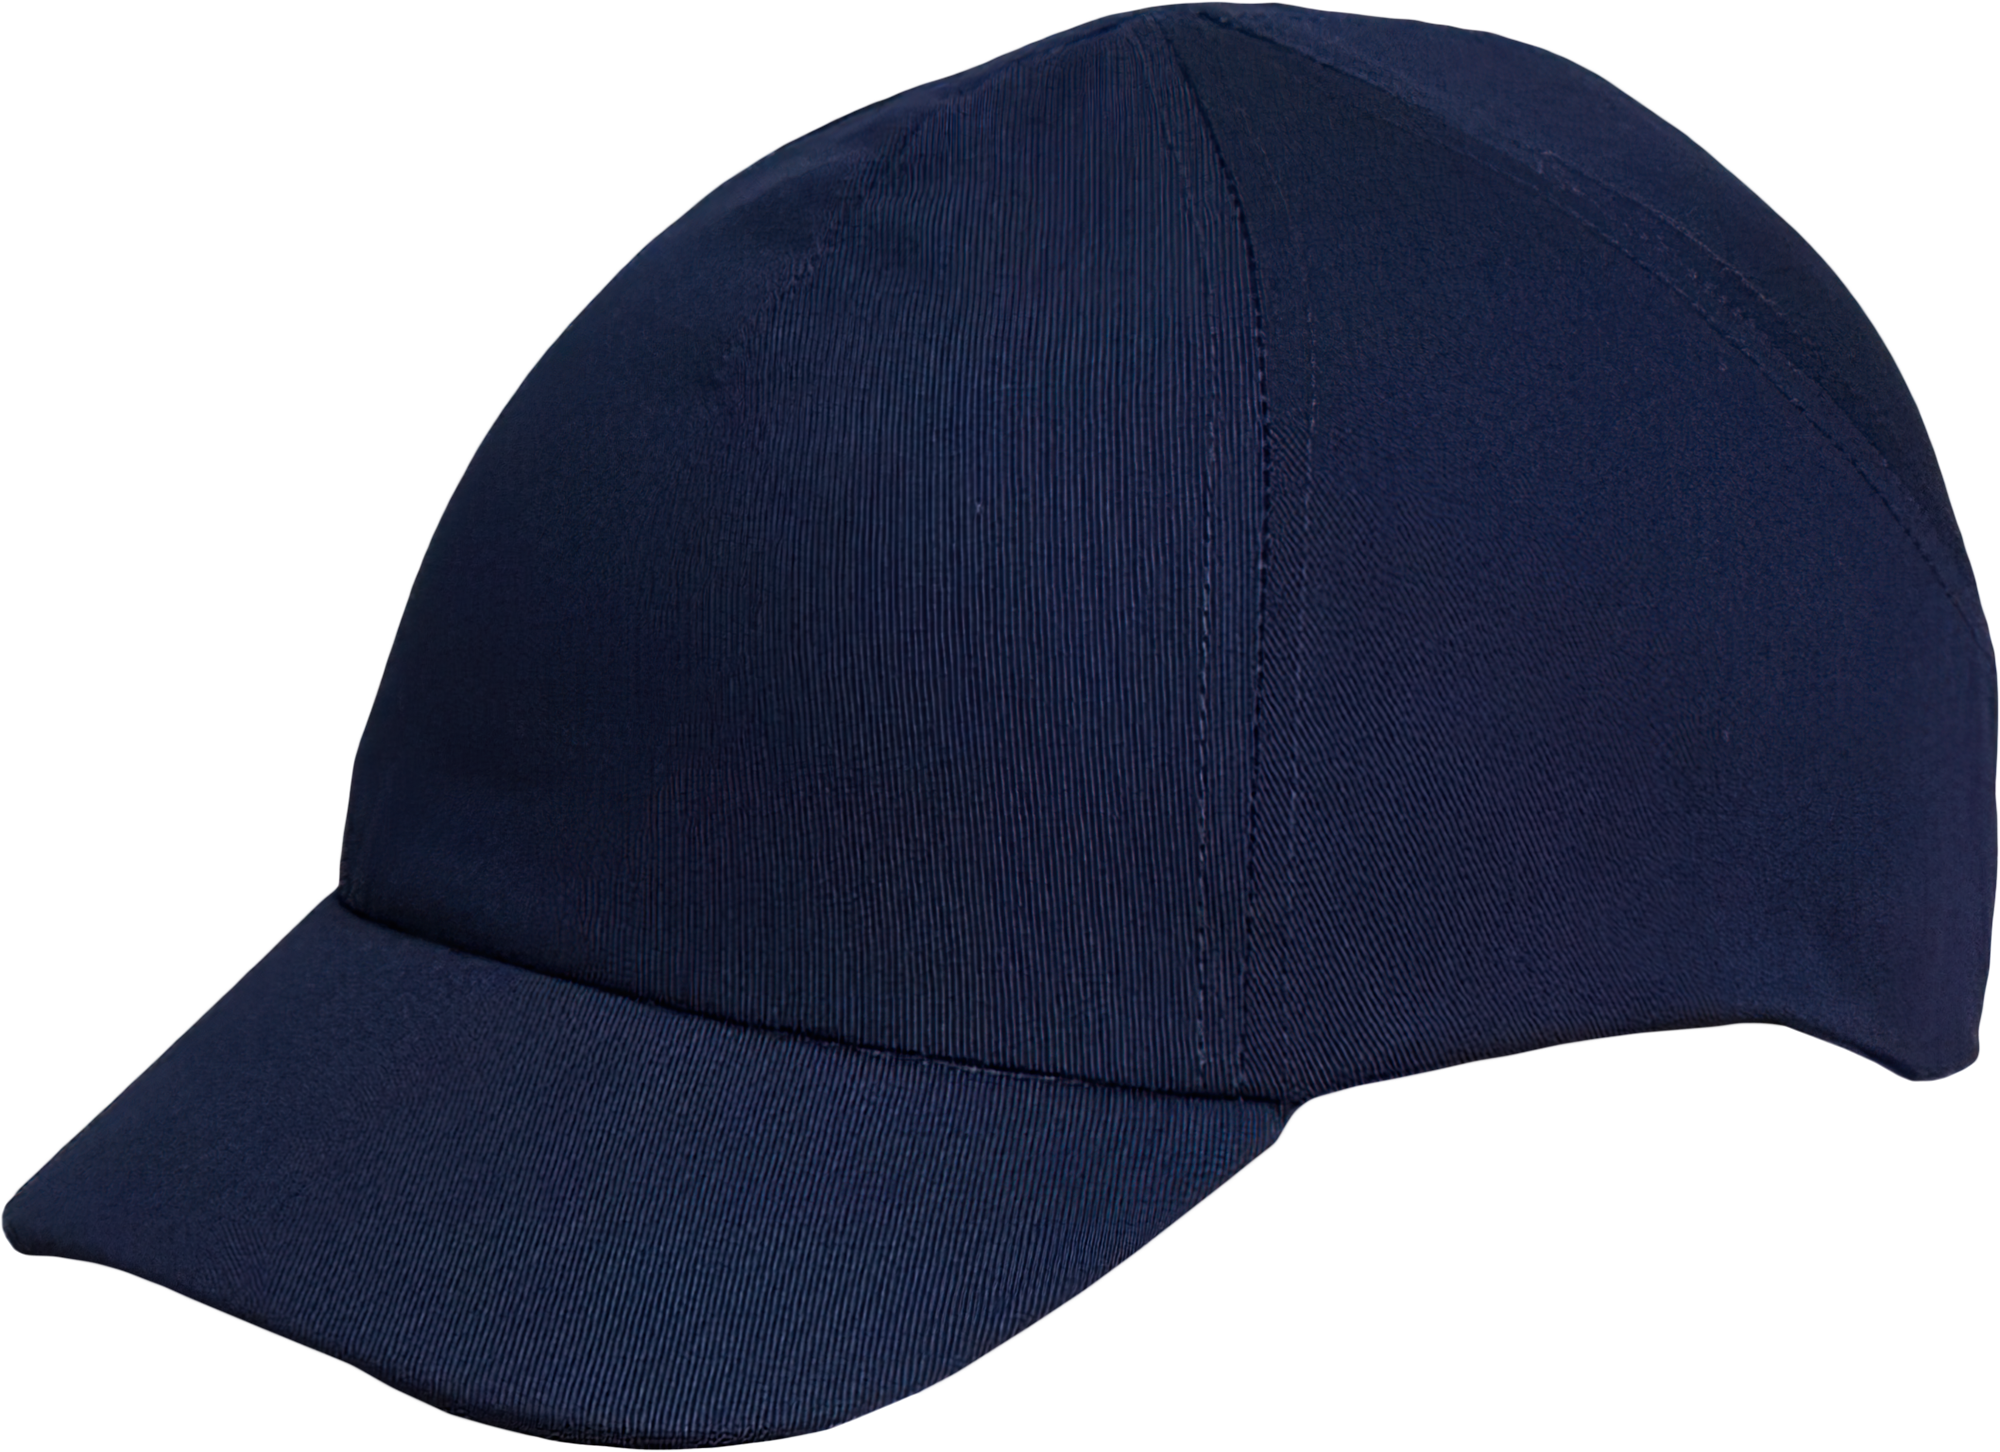 Каскетка РОСОМЗ™ RZ ВИЗИОН CAP (98218) синяя, длина козырька 55 мм – 1